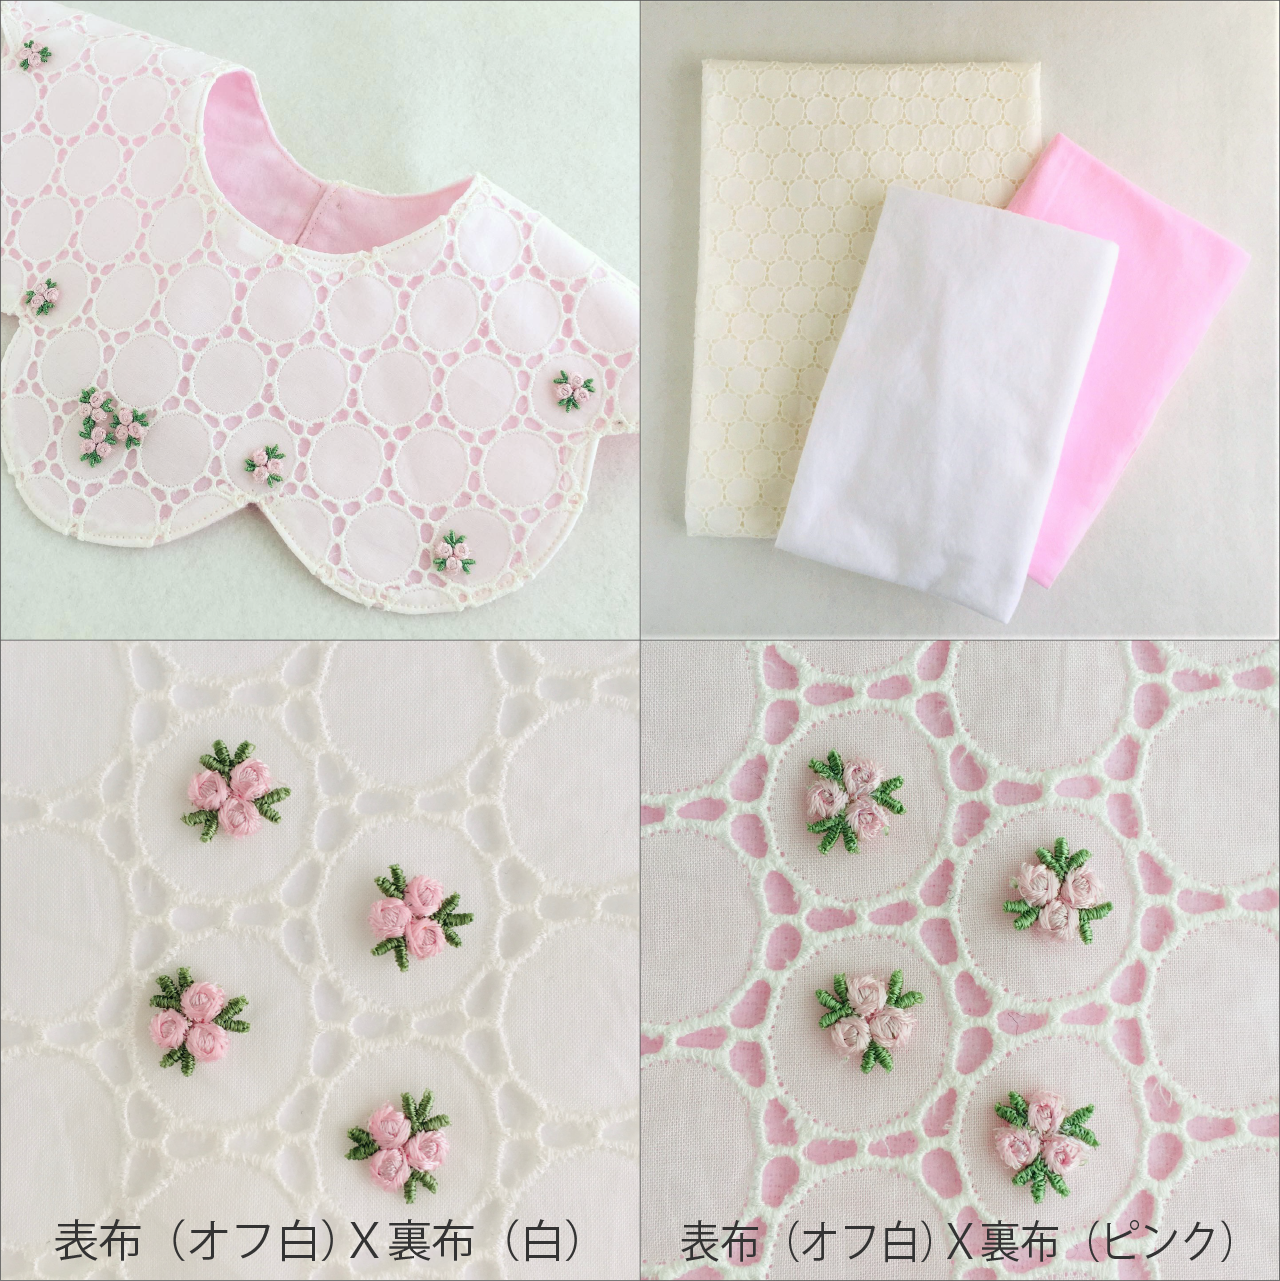 キット 花びらスタイ 布地と型紙と作り方のセット Kit 08ba 子供服の型紙ショップ Tsukuro ツクロ